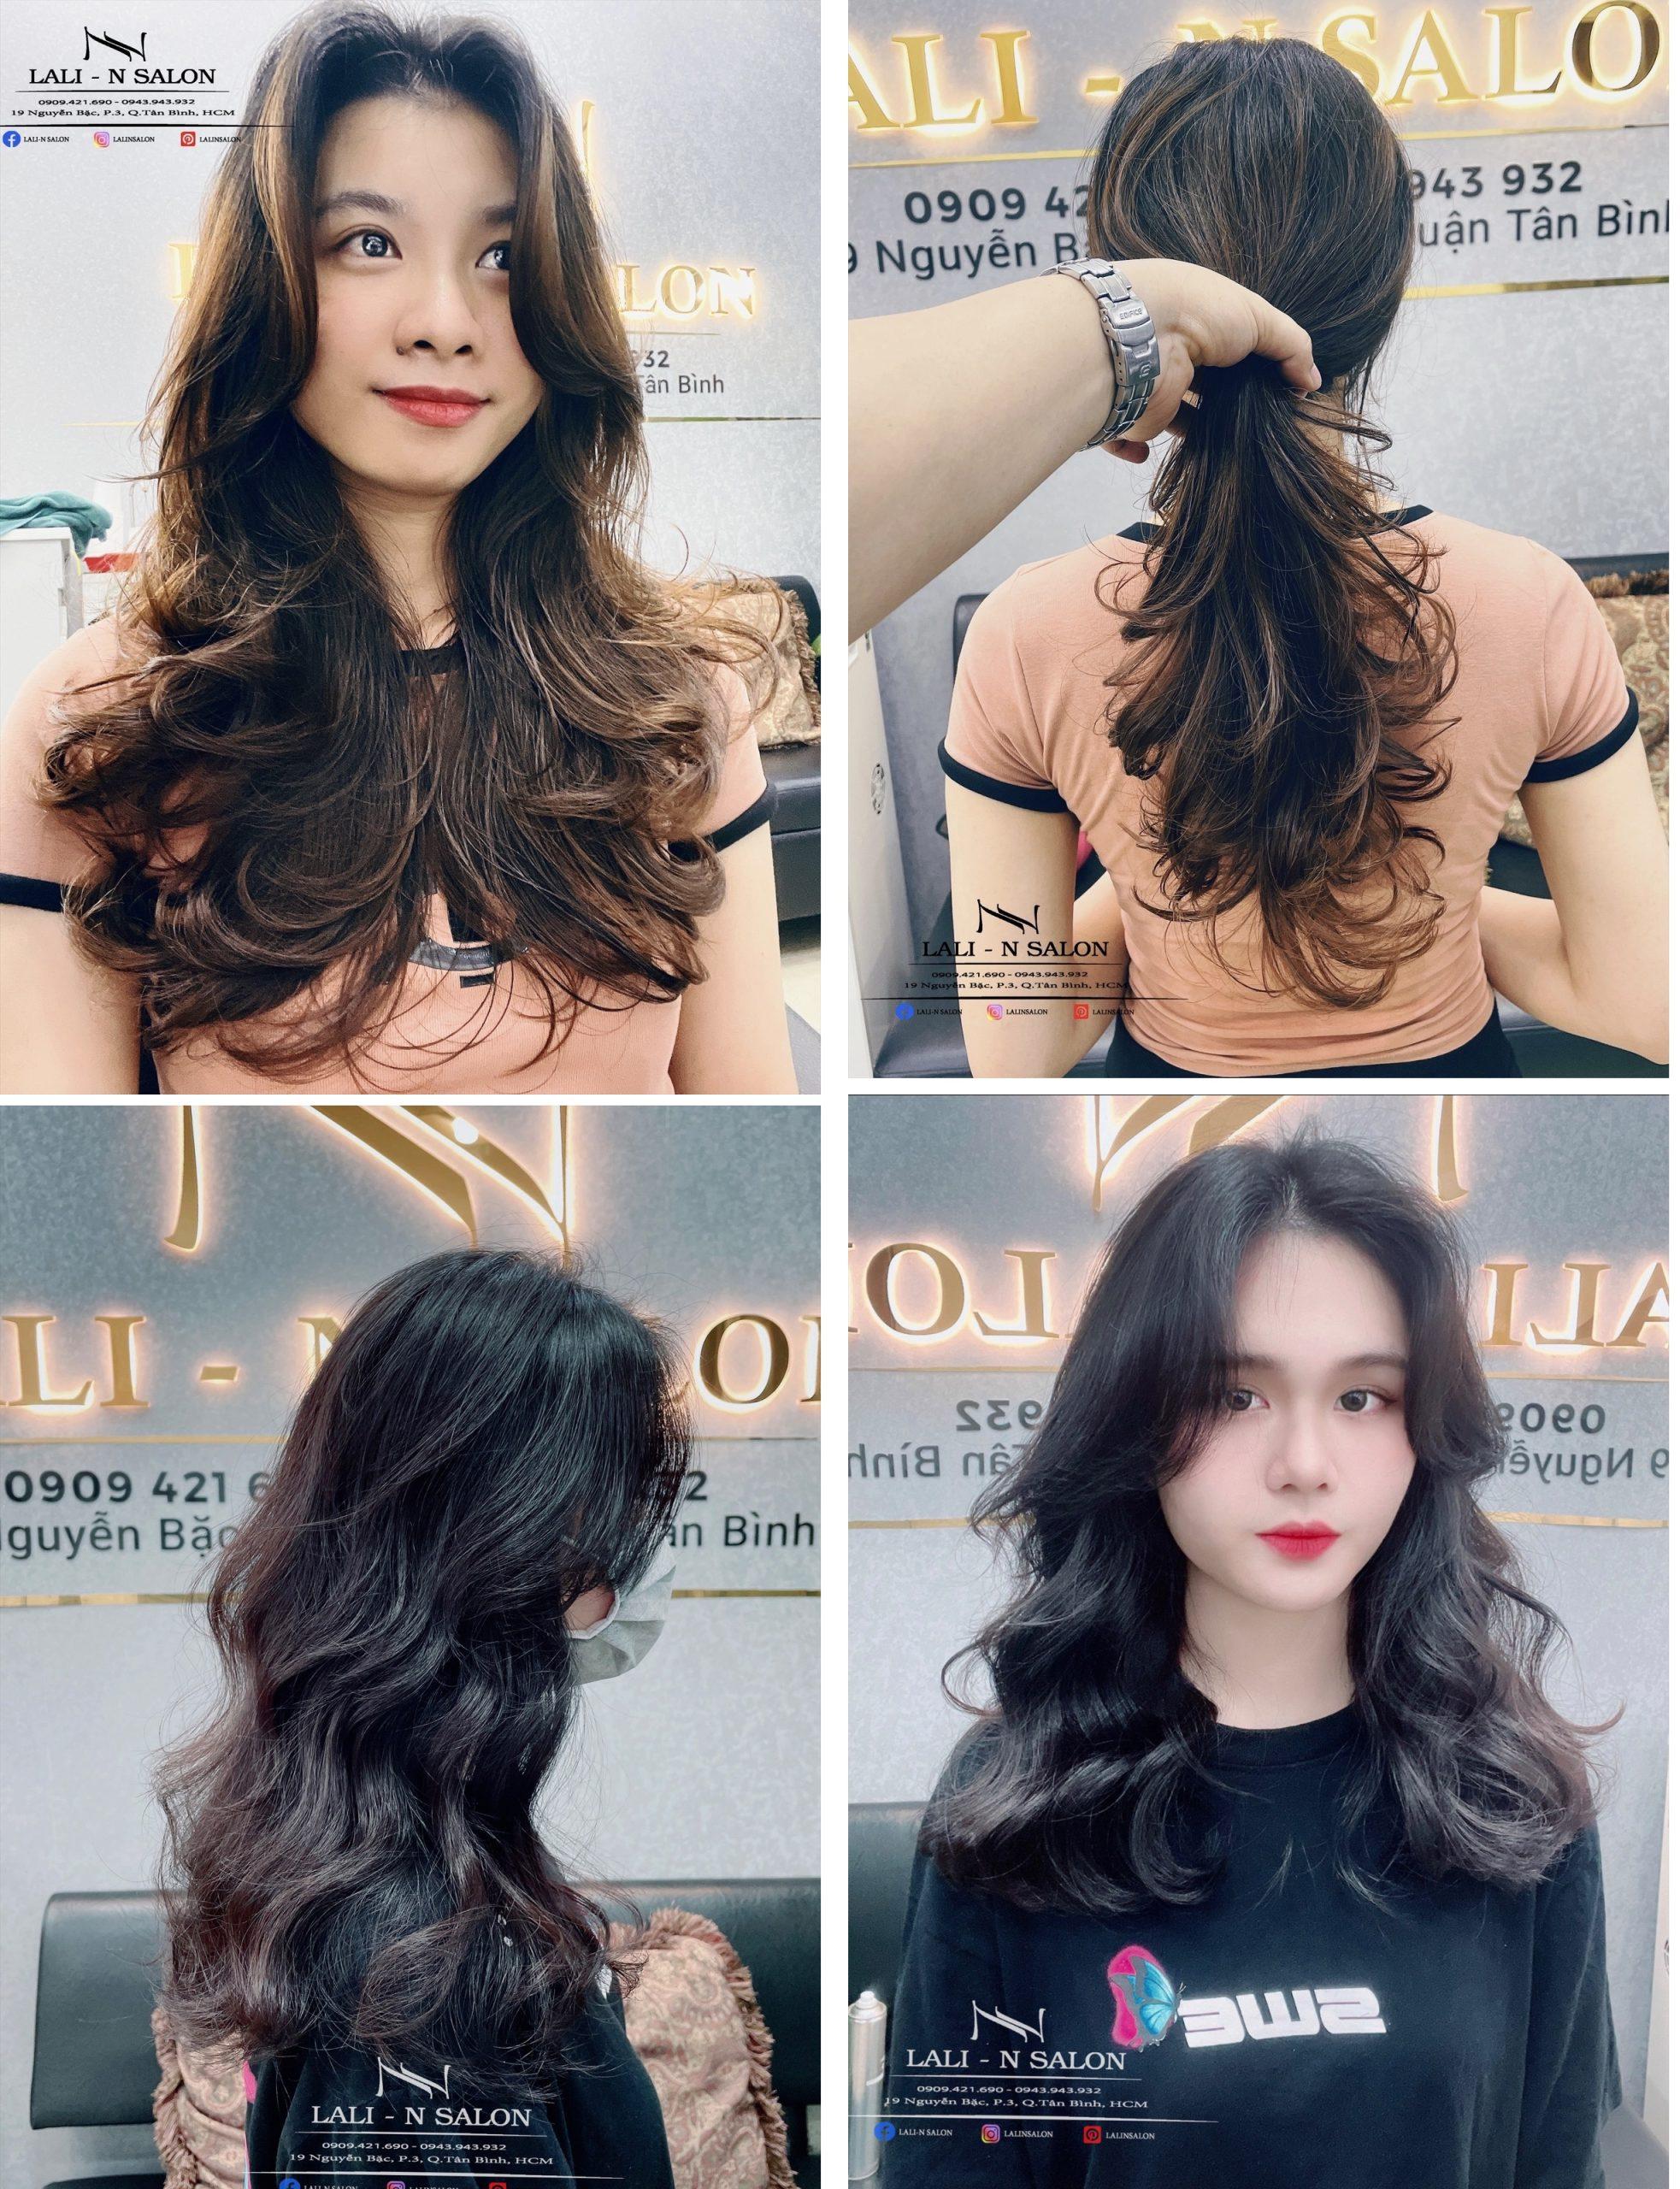 Salon uốn tóc Hàn Quốc là điểm đến lý tưởng cho những ai yêu thích phong cách Hàn Quốc và muốn tạo ra một diện mạo mới với kiểu tóc uốn đẹp. Hãy xem hình ảnh của chúng tôi để cảm nhận được sức hút và chất lượng dịch vụ tại salon này.